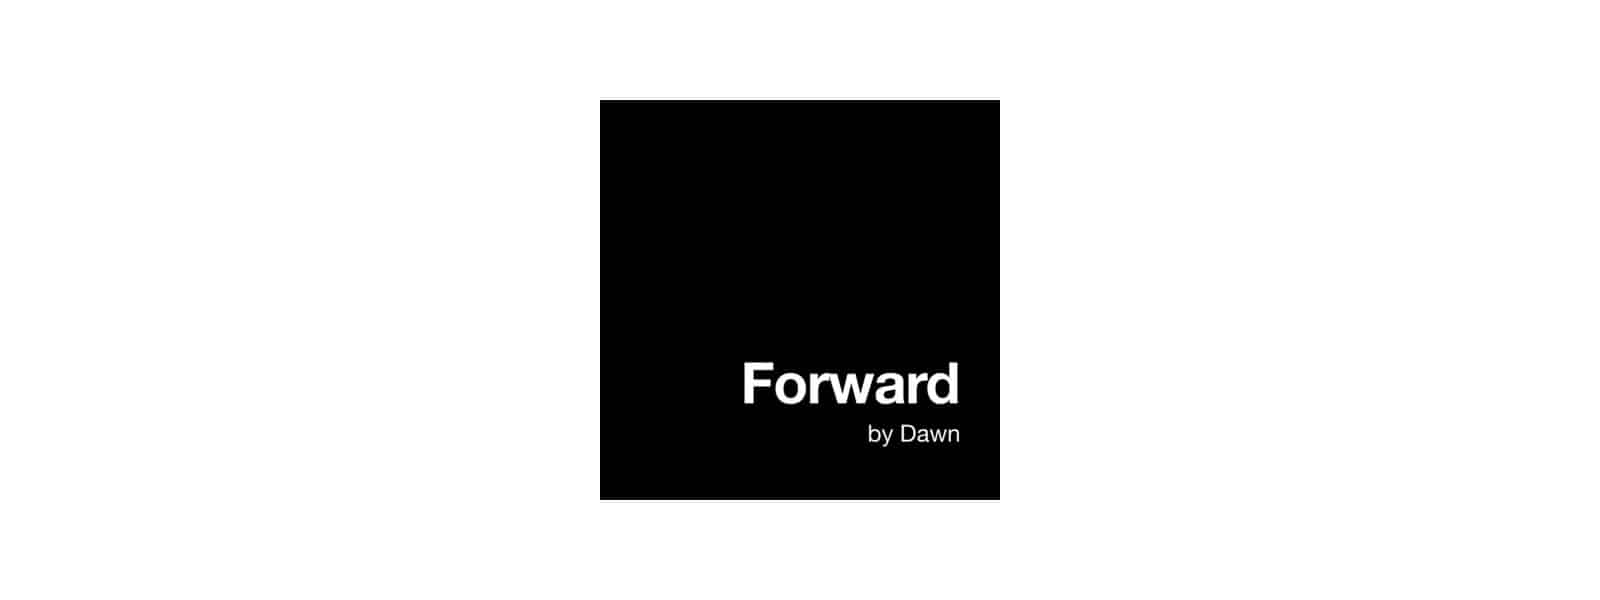 Forward by Dawn logo